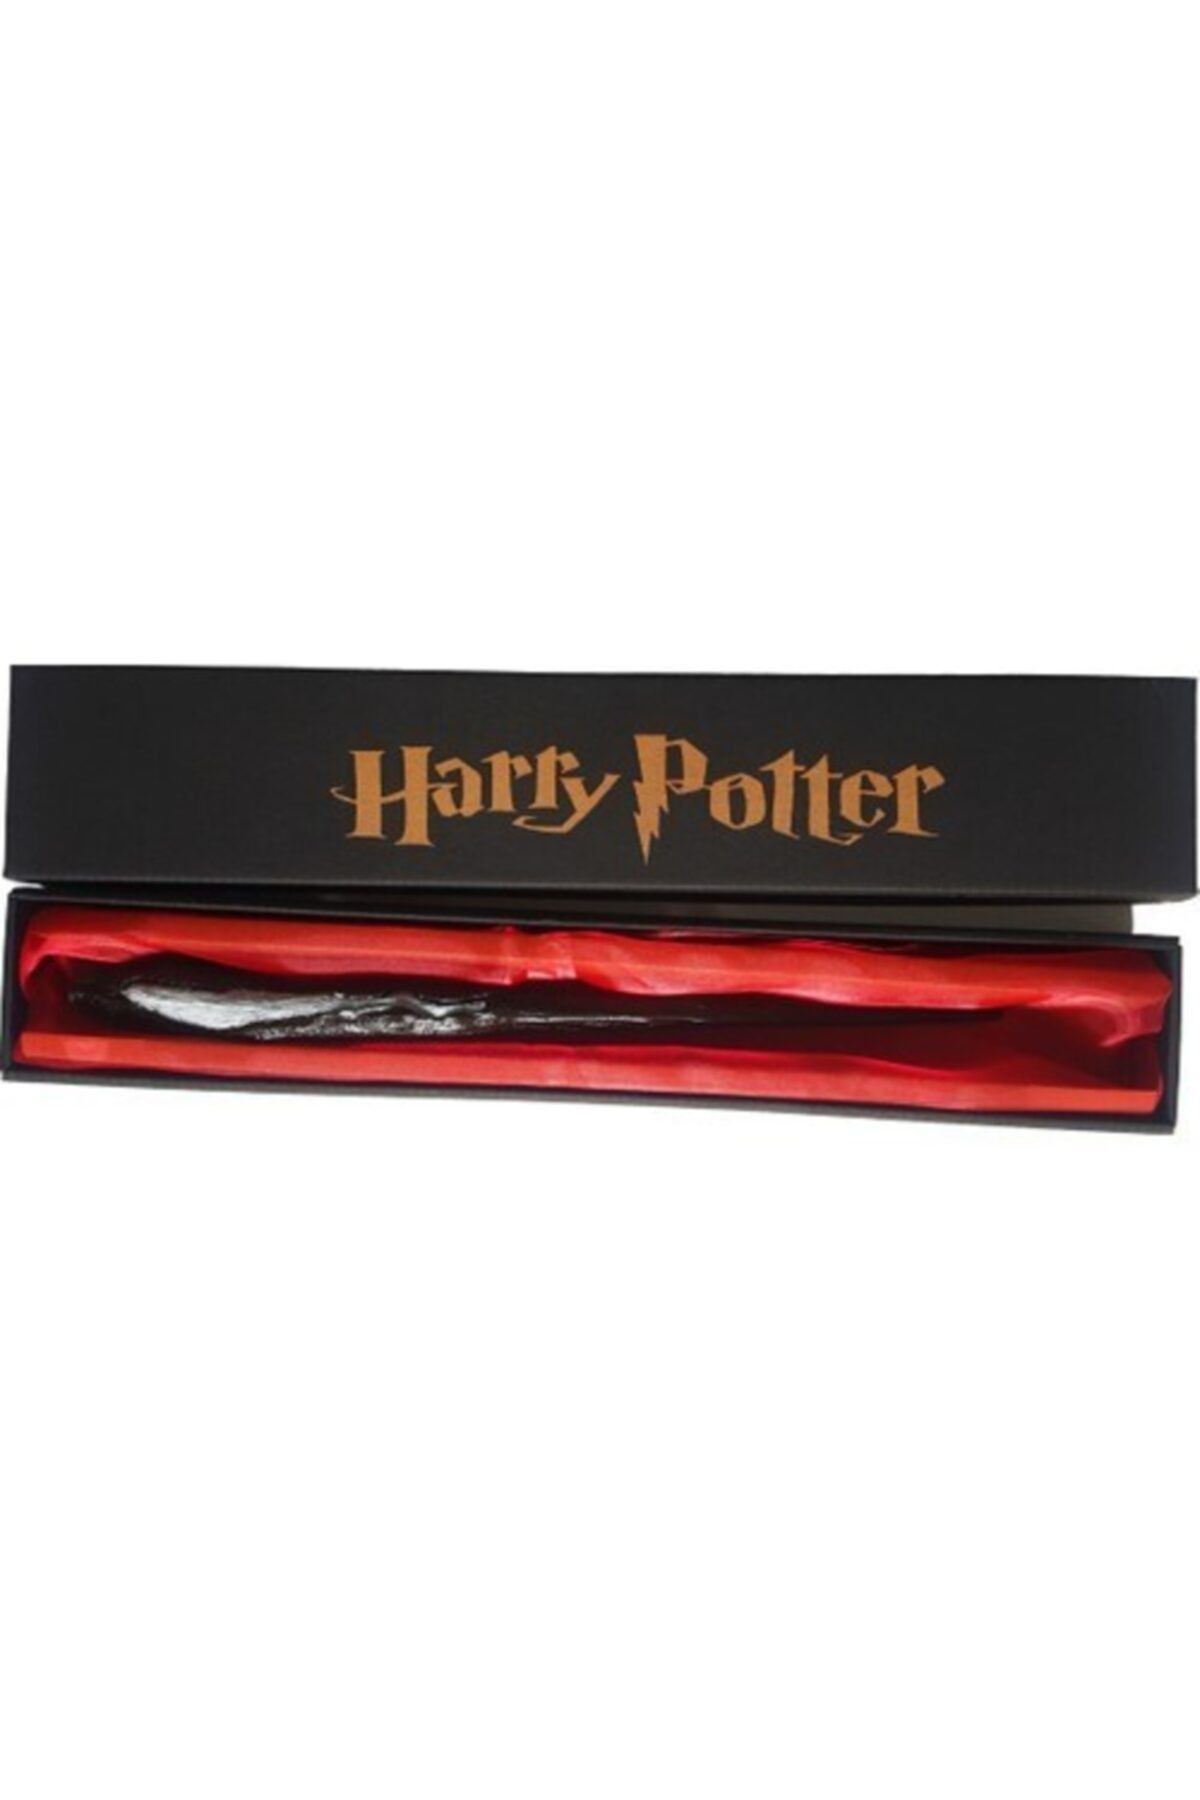 Keskin Harry Potter Sihirli Bellatrix Asa Hediyelik Eşya 30-34 Cm Polyester